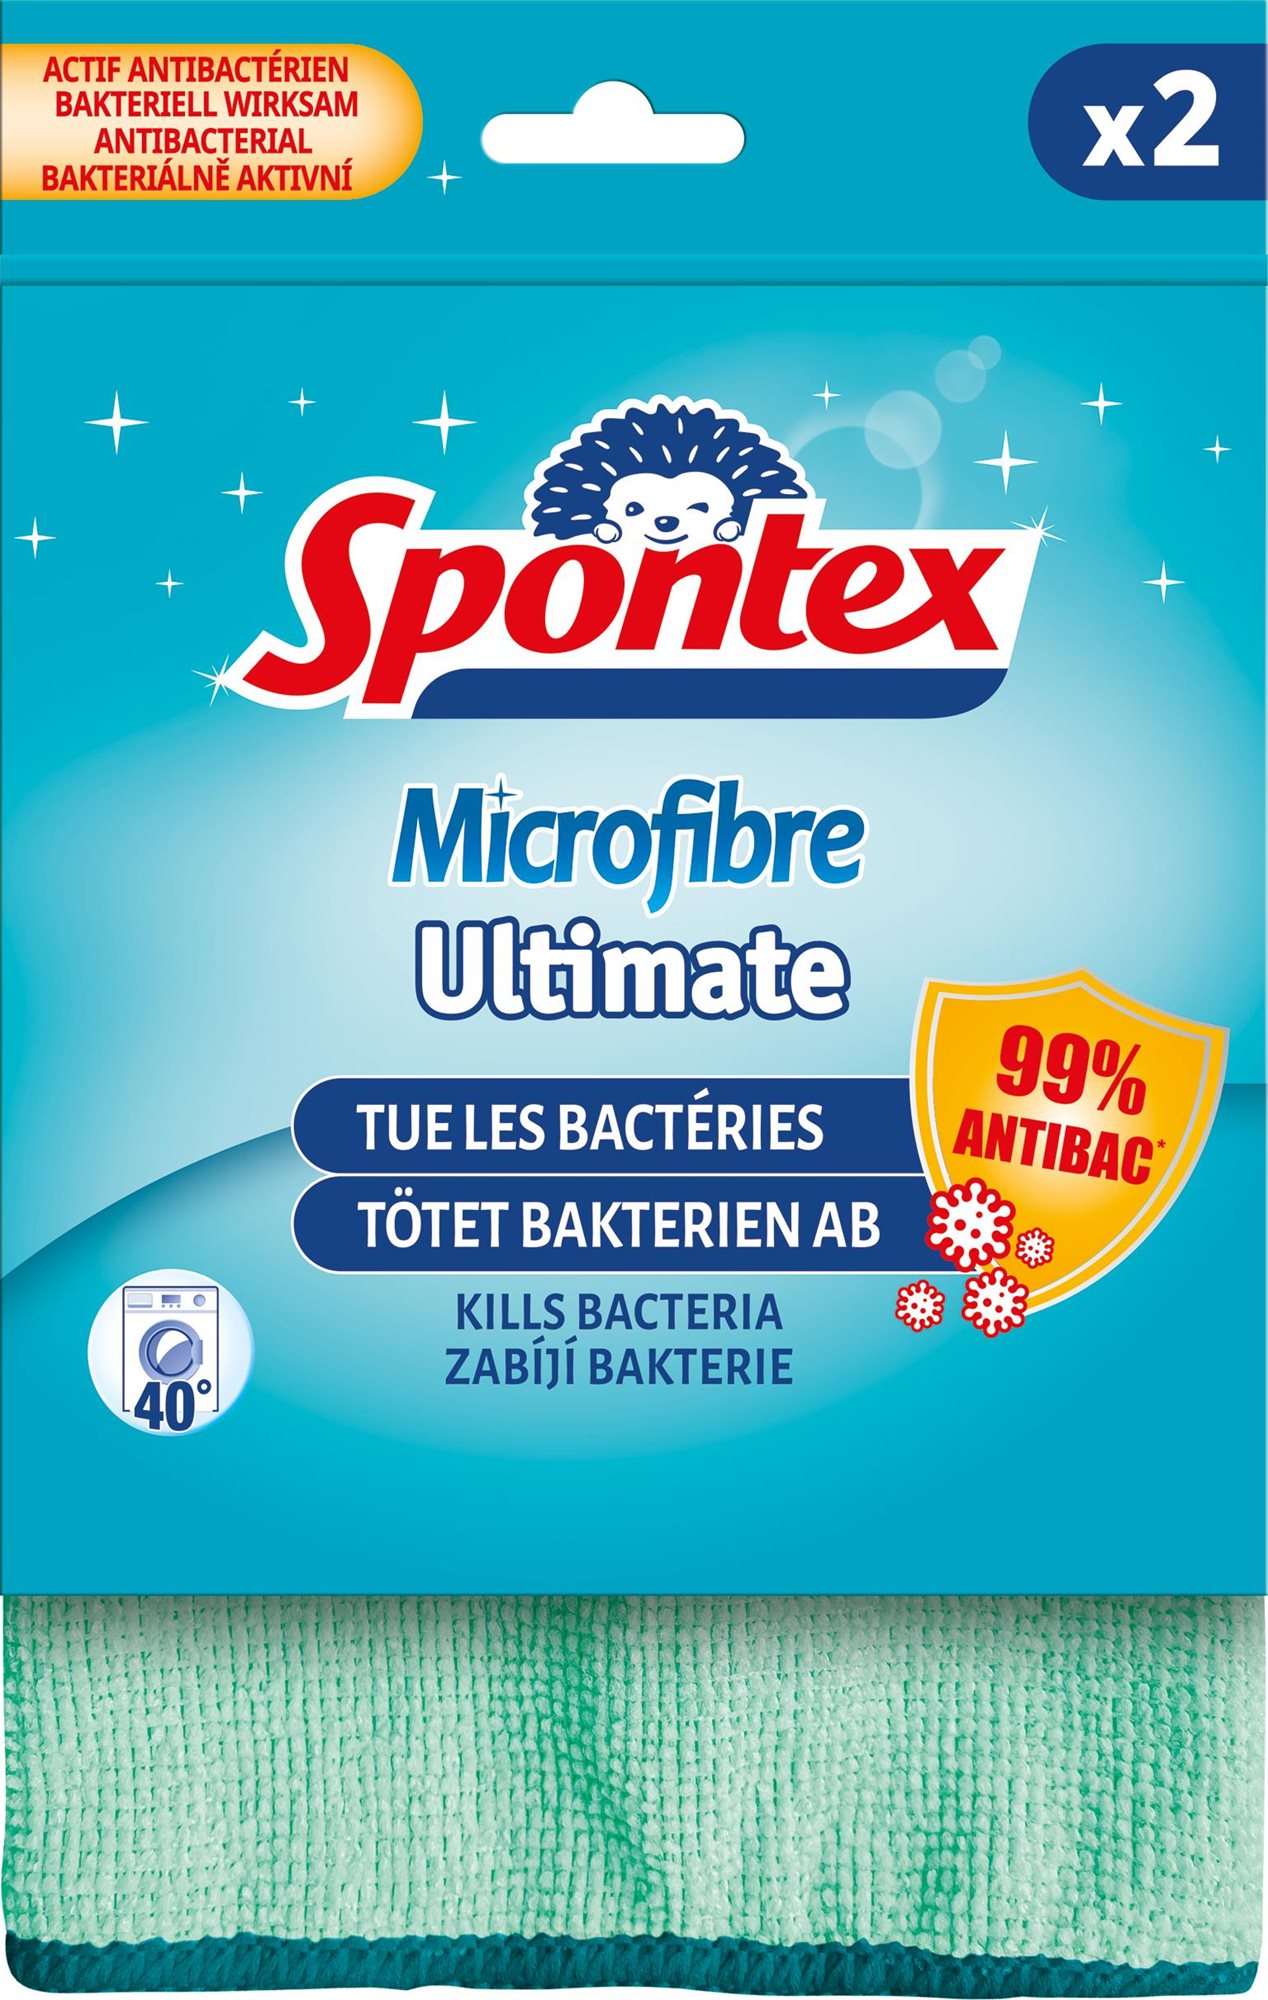 SPONTEX Microfibre Ultimate kendő, két darab